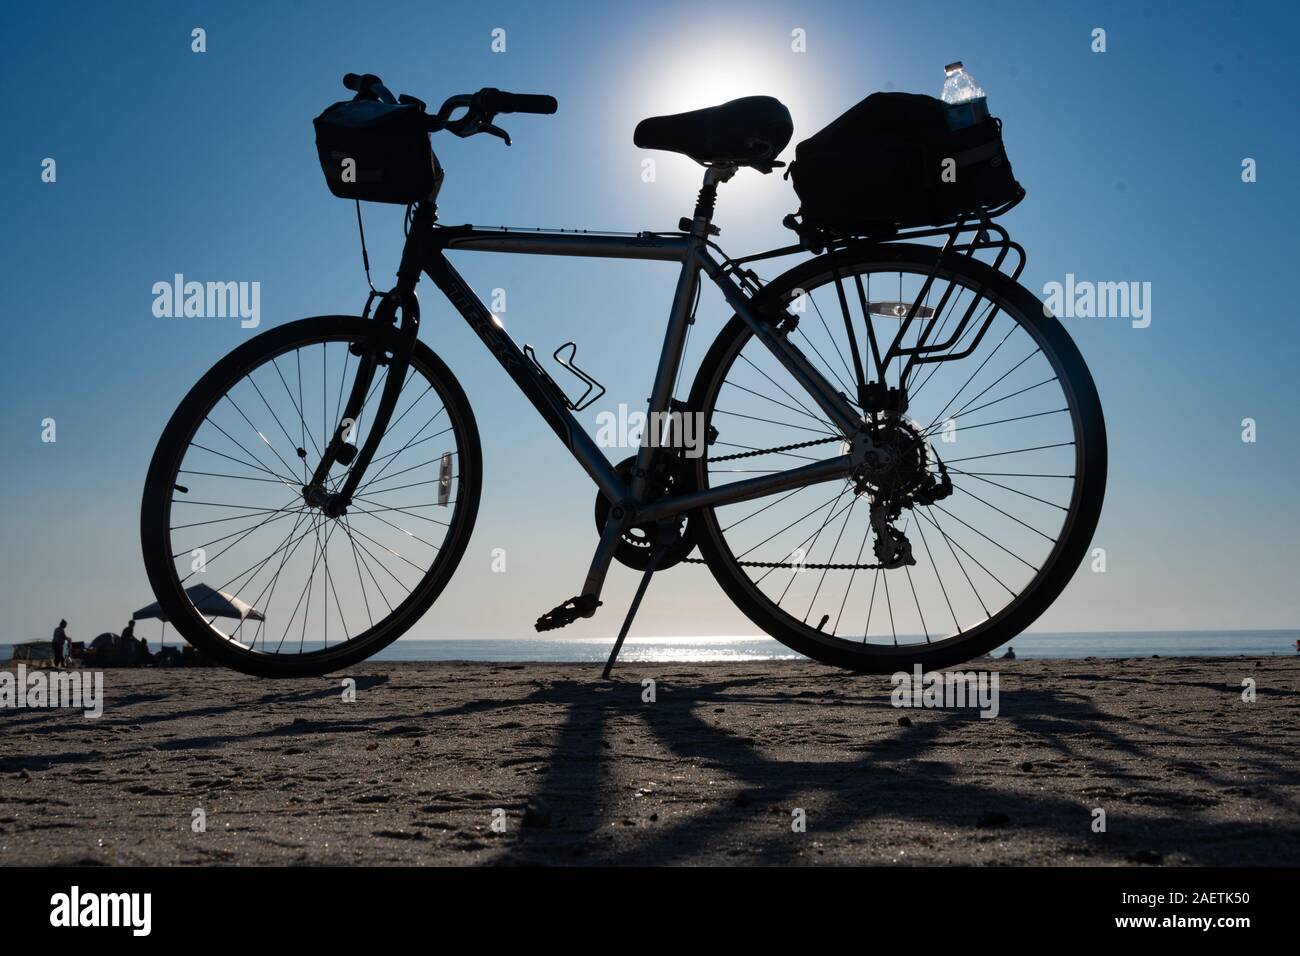 Ein Fahrrad am Strand an einem klaren Tag, Maryland geparkt. Stockfoto